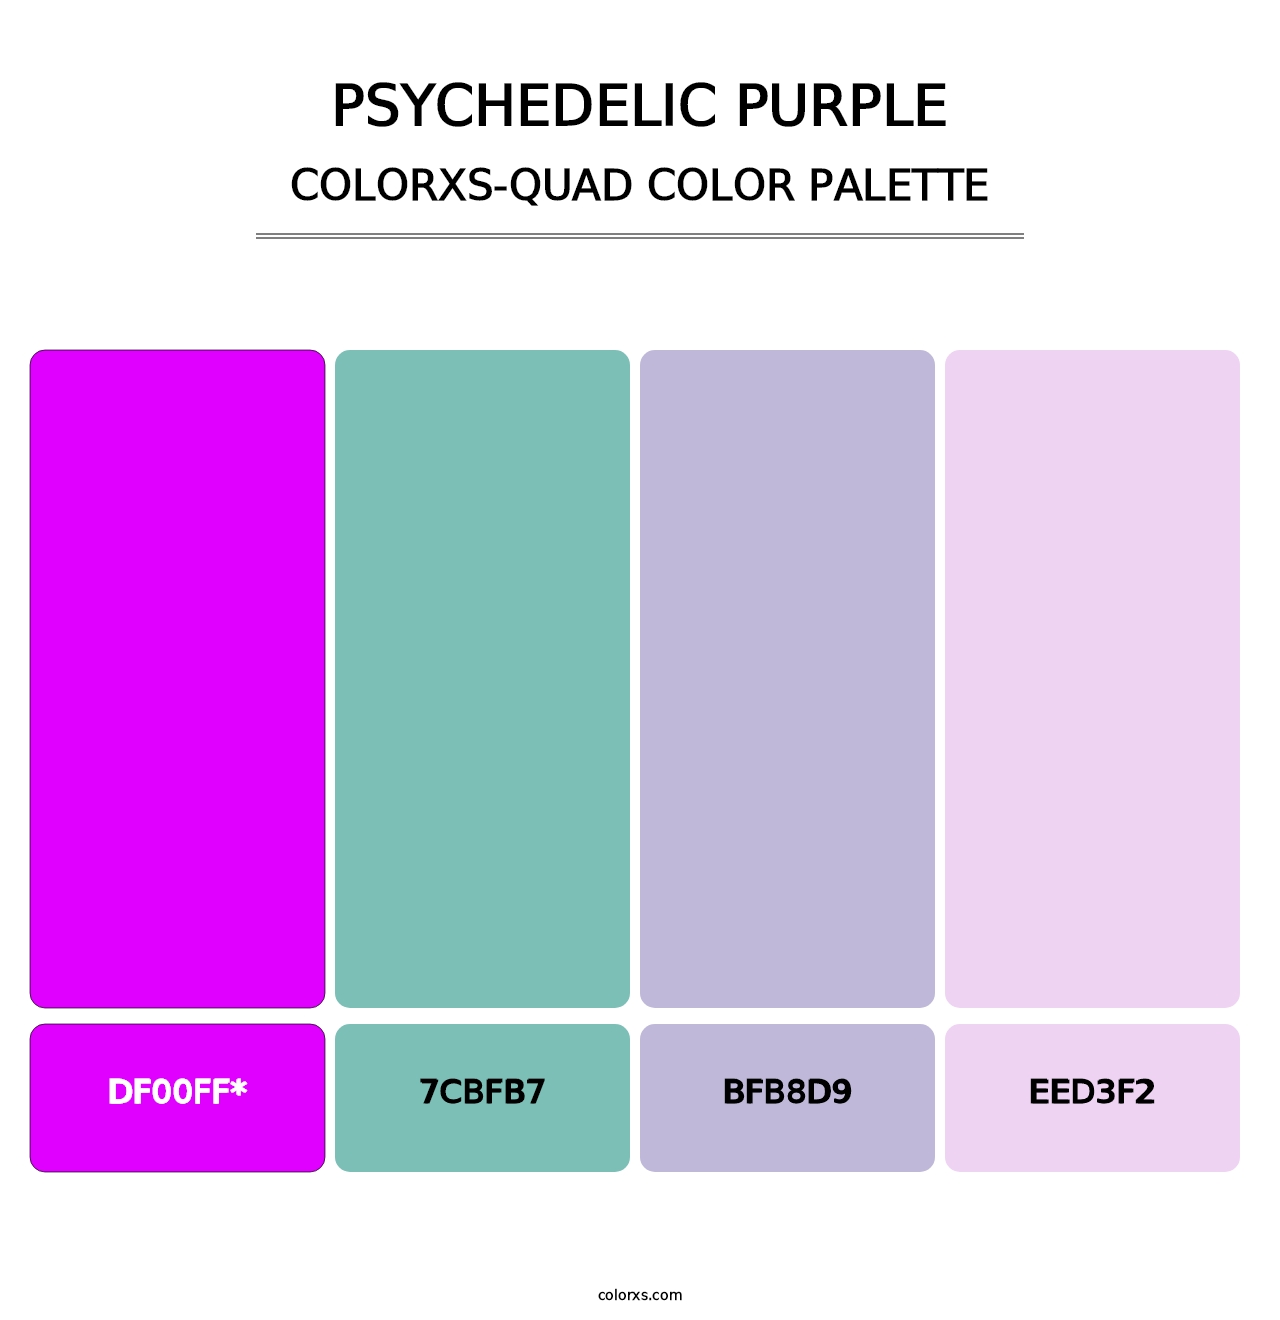 Psychedelic Purple - Colorxs Quad Palette